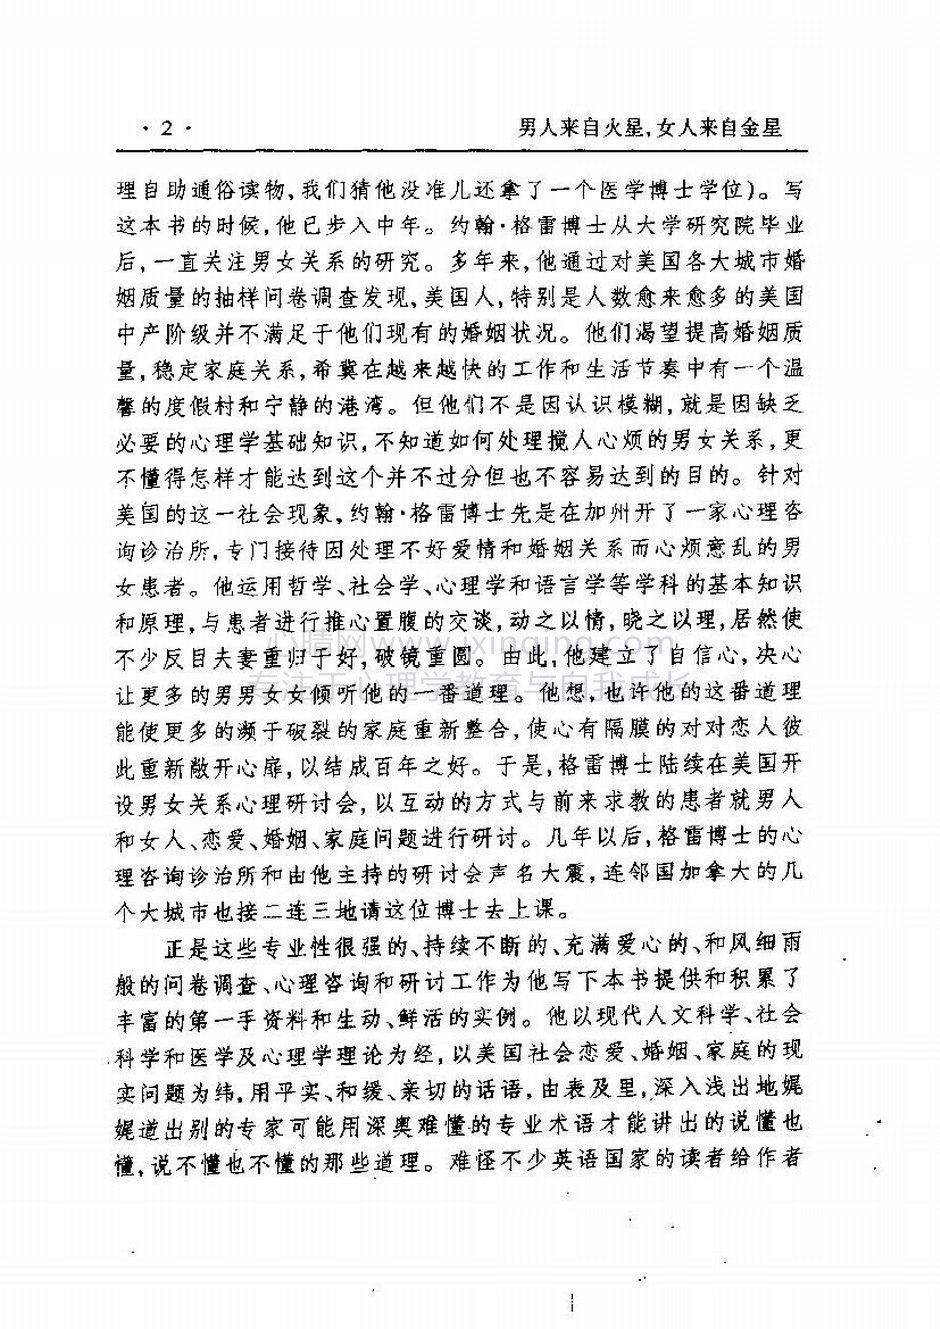 封面、原序、译序、中文版出版前言(6)